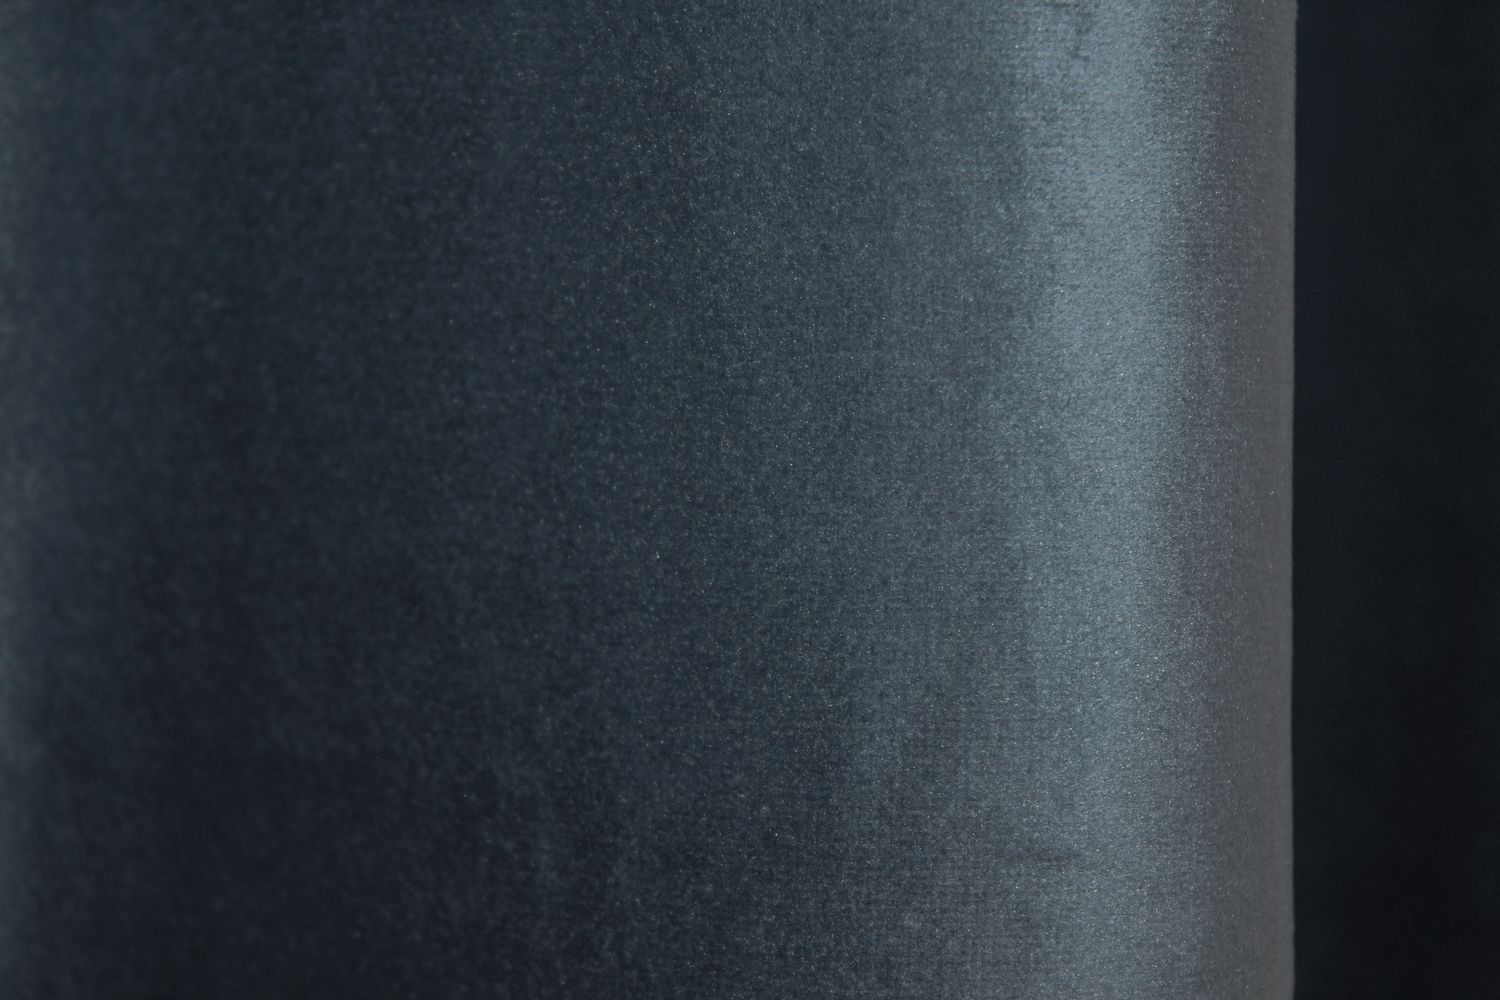 Комплект штор из ткани бархат "Kadife" цвет темно-синий 1132ш, Темно-синий, Комплект штор (2 шт. 1,5х2,75м.), Классические, Без ламбрекена, Длинные, 1,5 м., 2,75 м., 150, 275, 2 - 3 м., В комплекте 2 шт., Тесьма